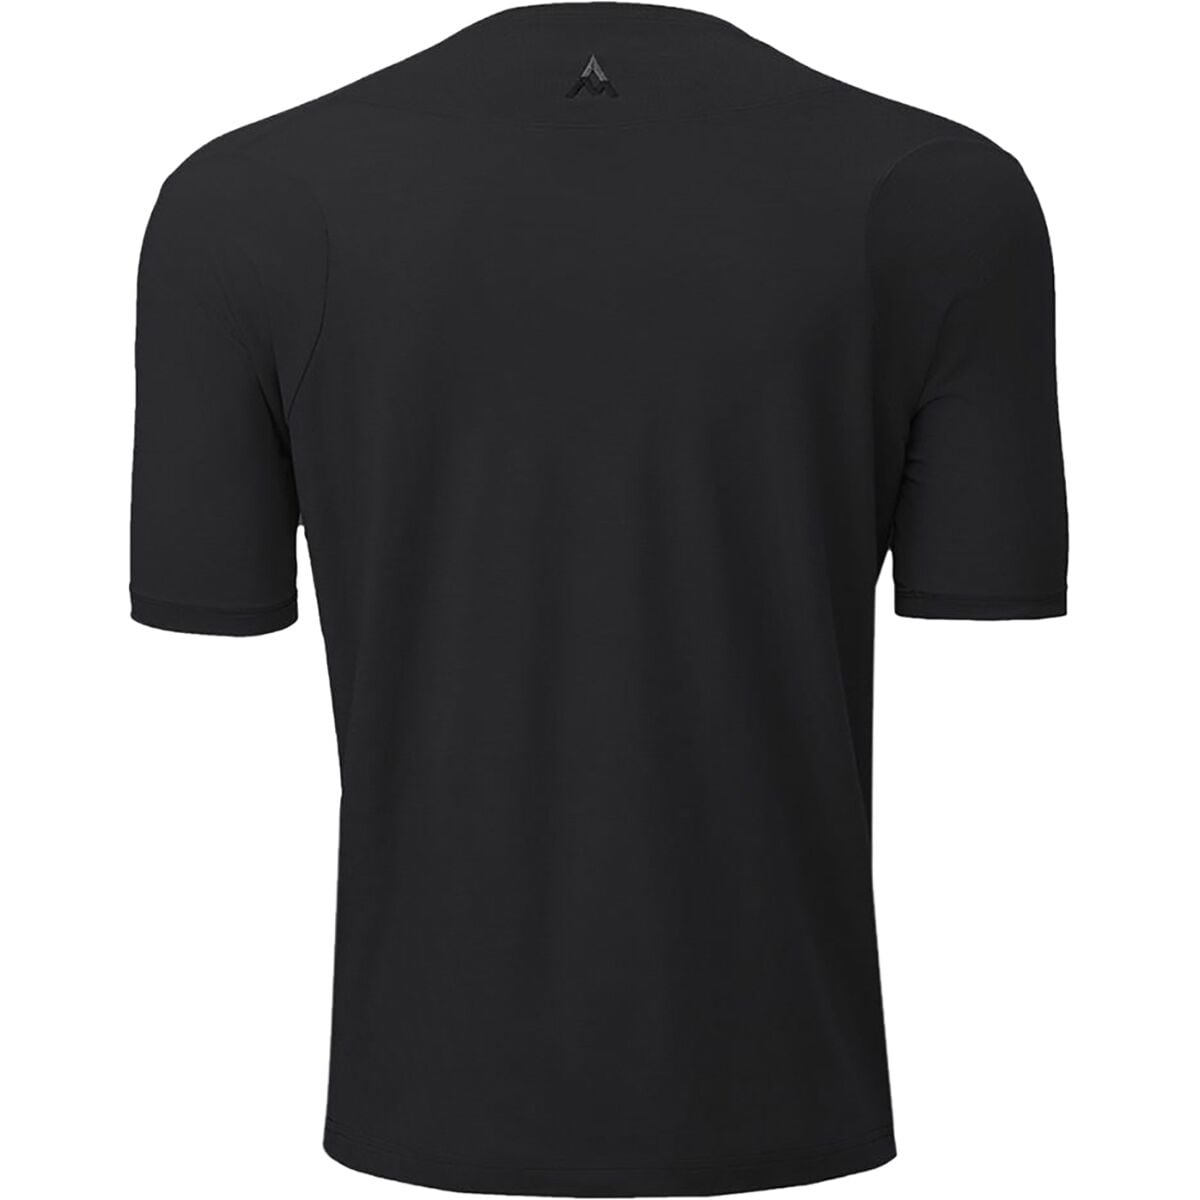  7mesh Industries Desperado Merino Short-Sleeve Shirt - Men